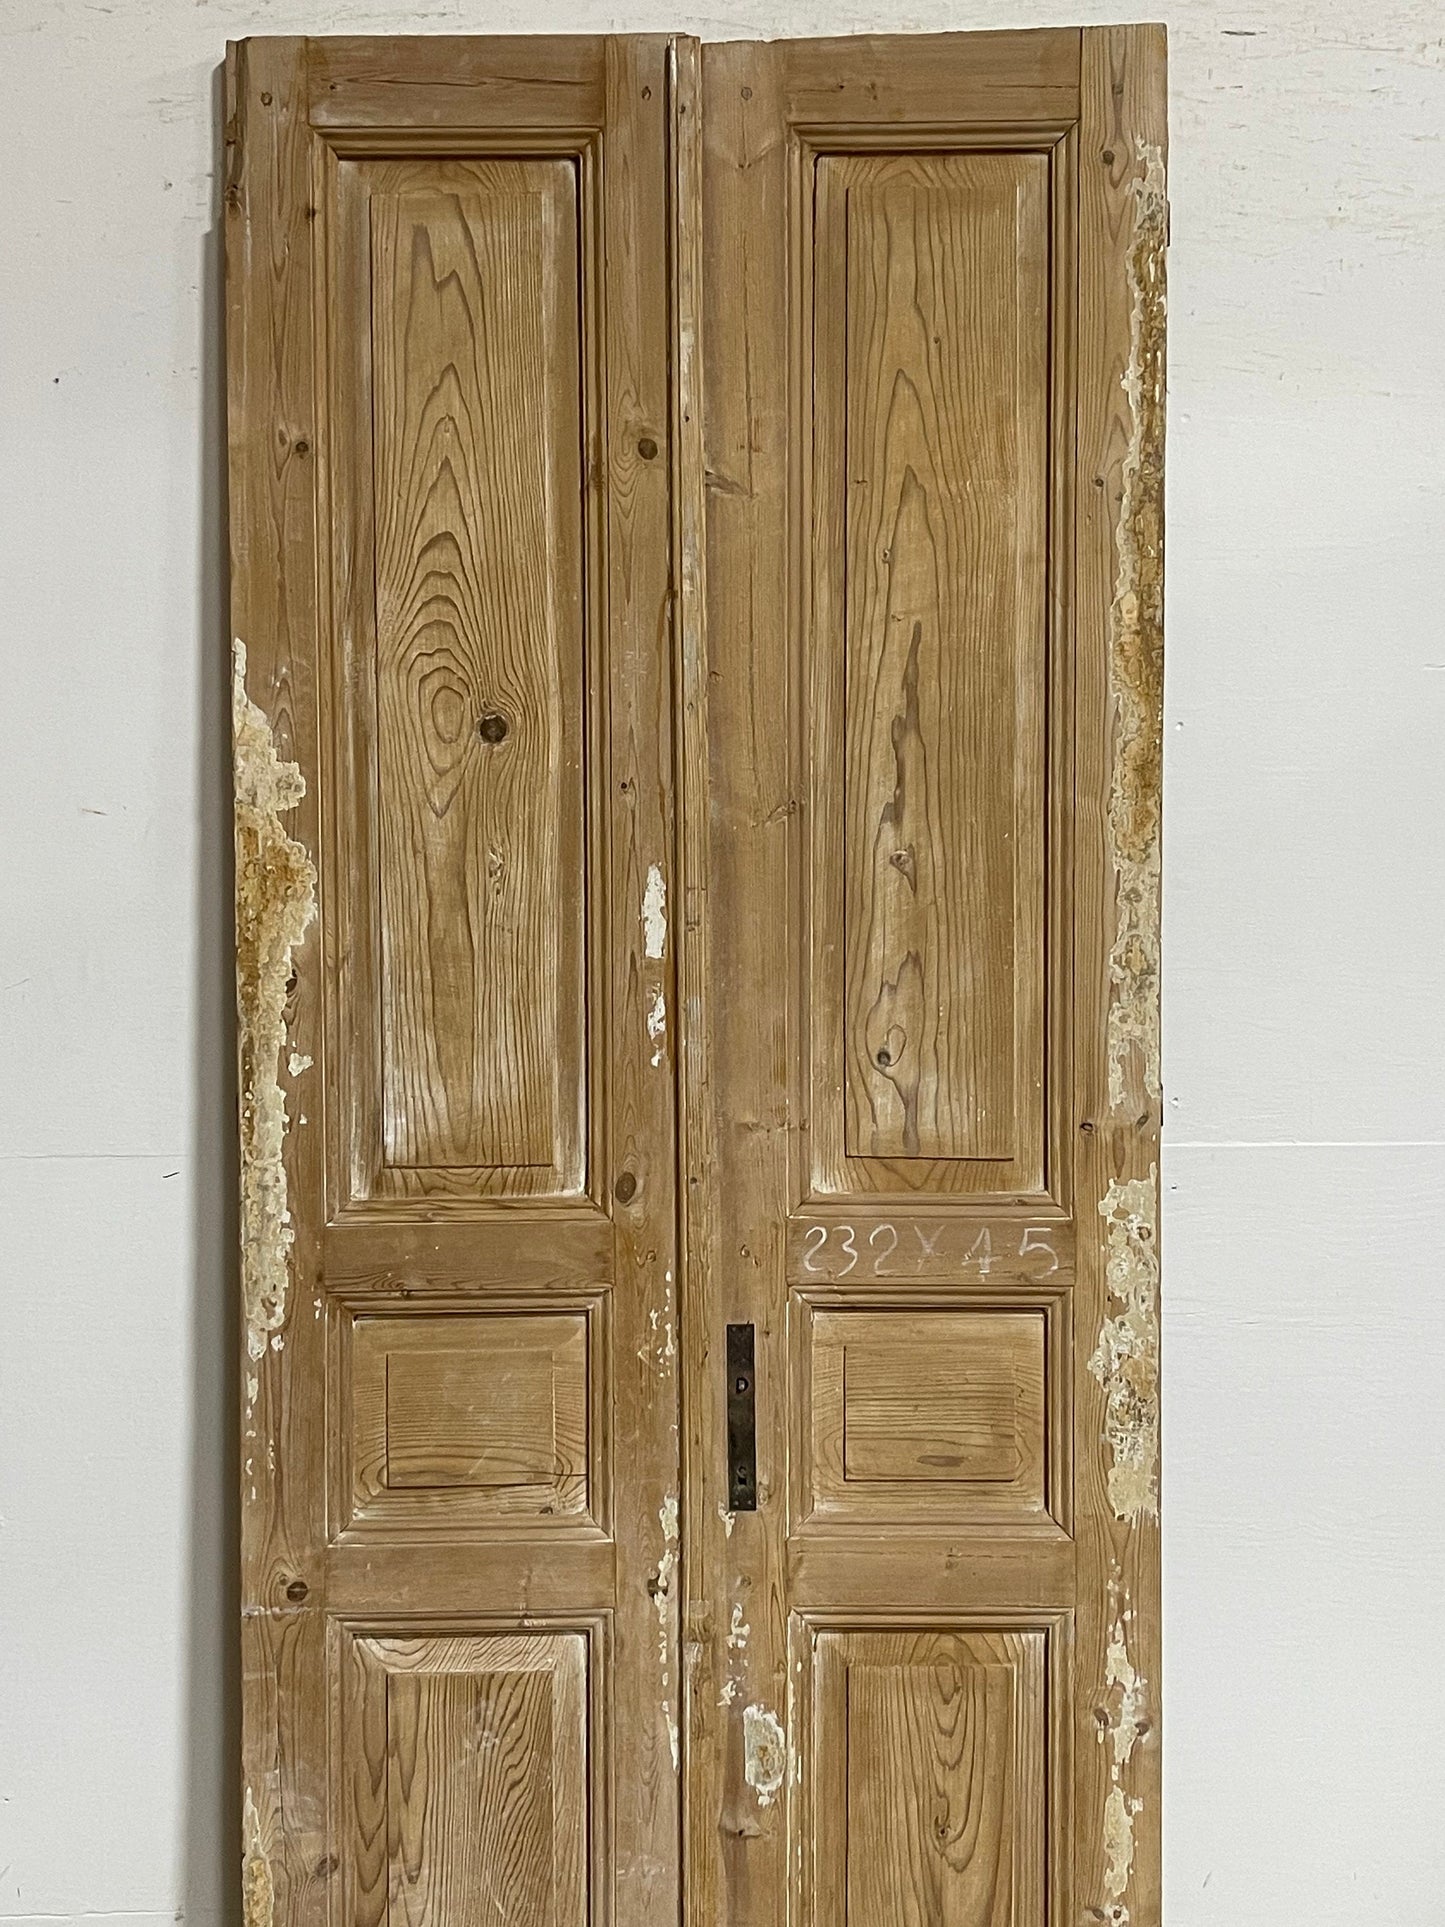 Antique French panel doors (91.5x35.5) I104s